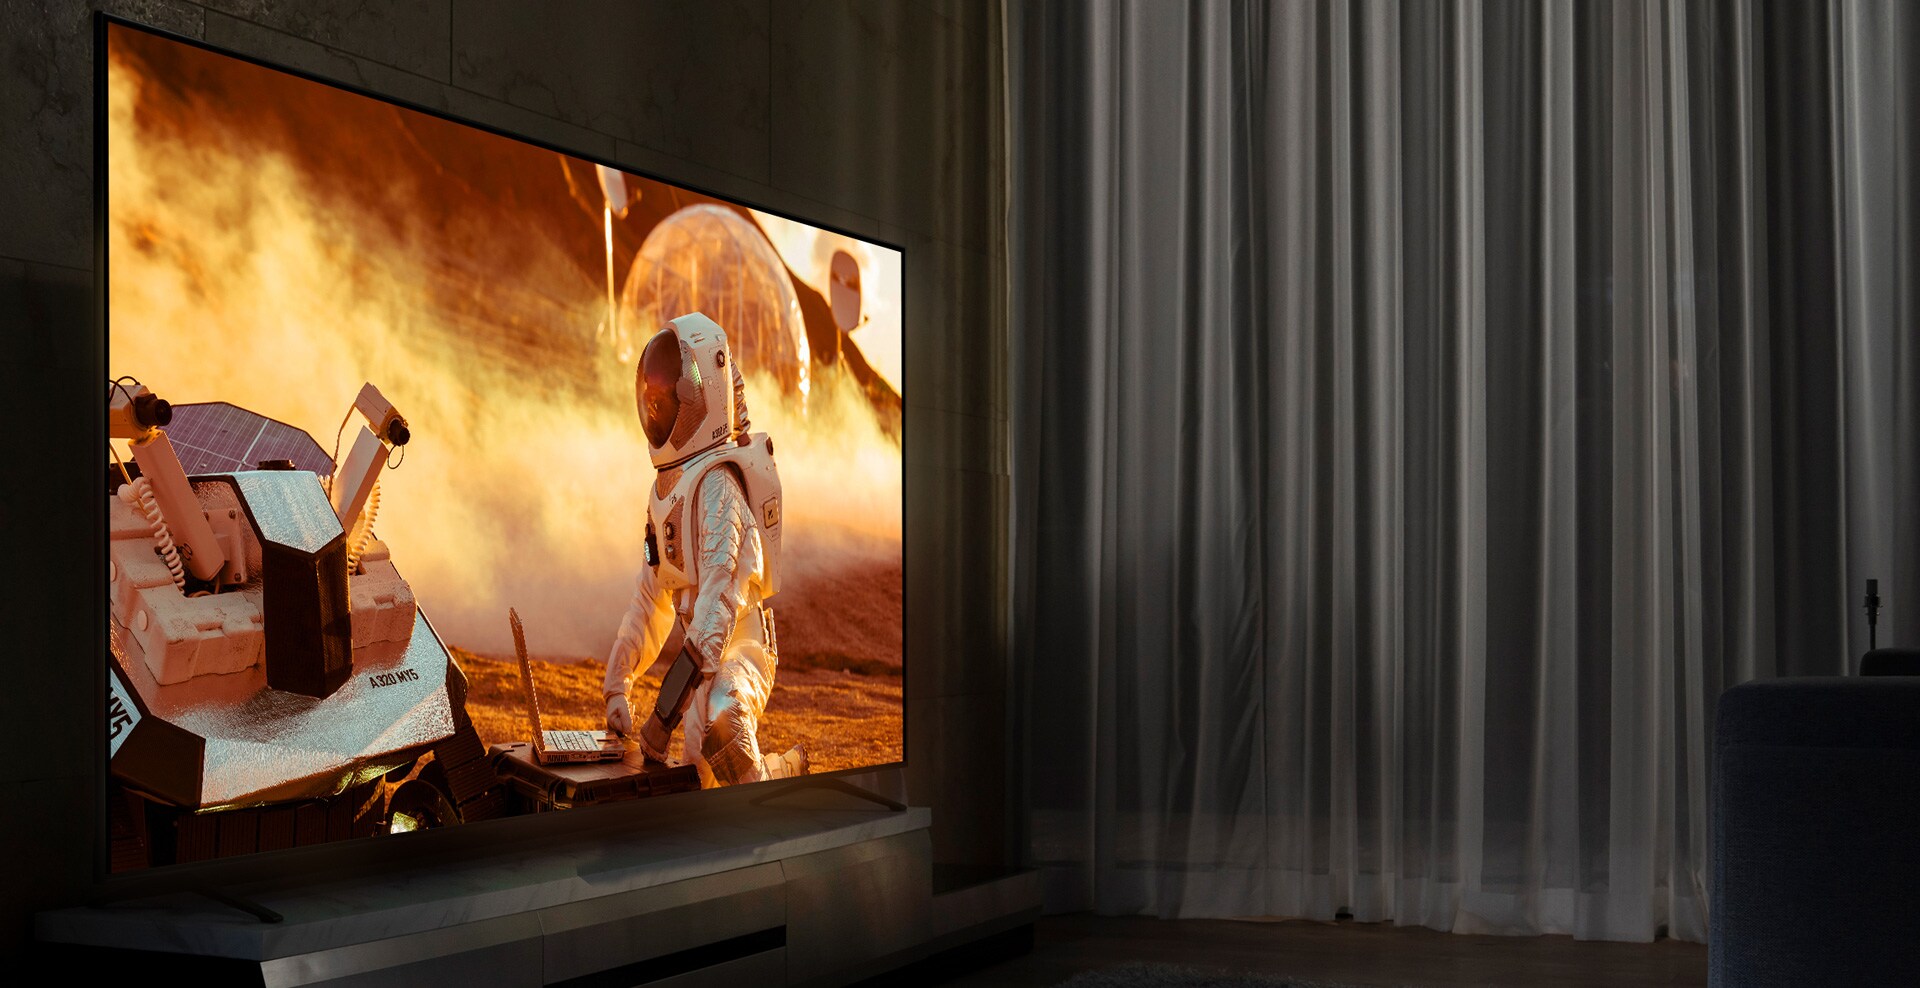 NanoCell TV u mračnoj dnevnoj sobi. Na ekranu se prikazuje scena iz filma.